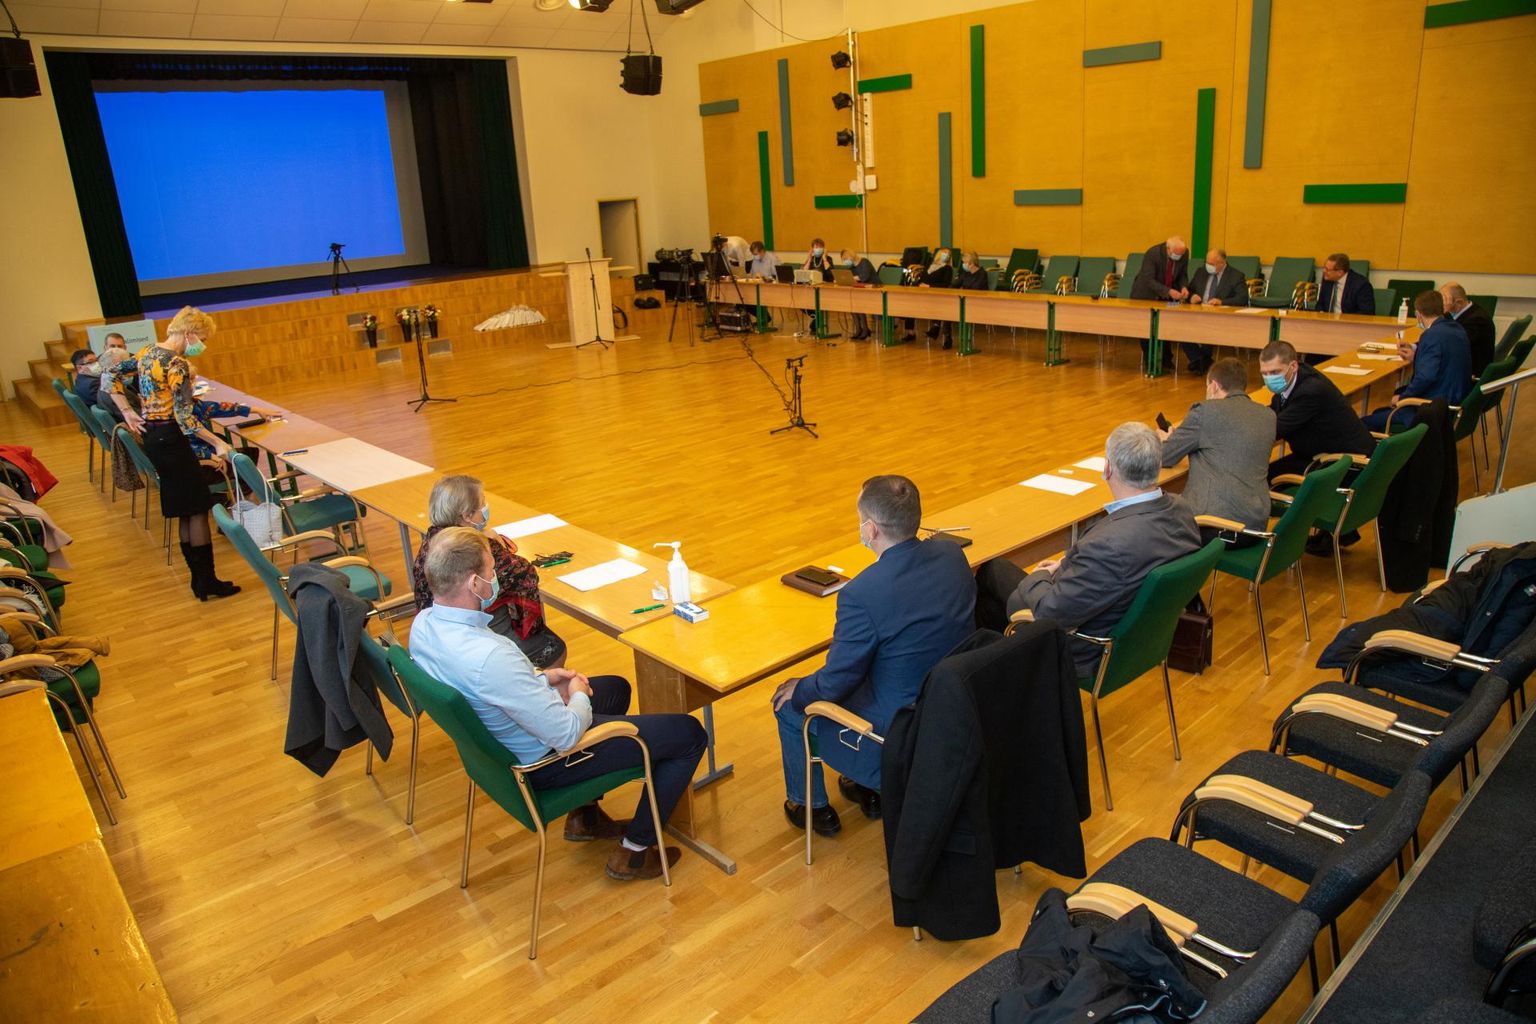 Põhja-Sakala volikogus kolmapäevast alates häälteenamusega võimuliitu enam ei ole. Uut koalitsiooni püüab kokku seada Keskerakond.